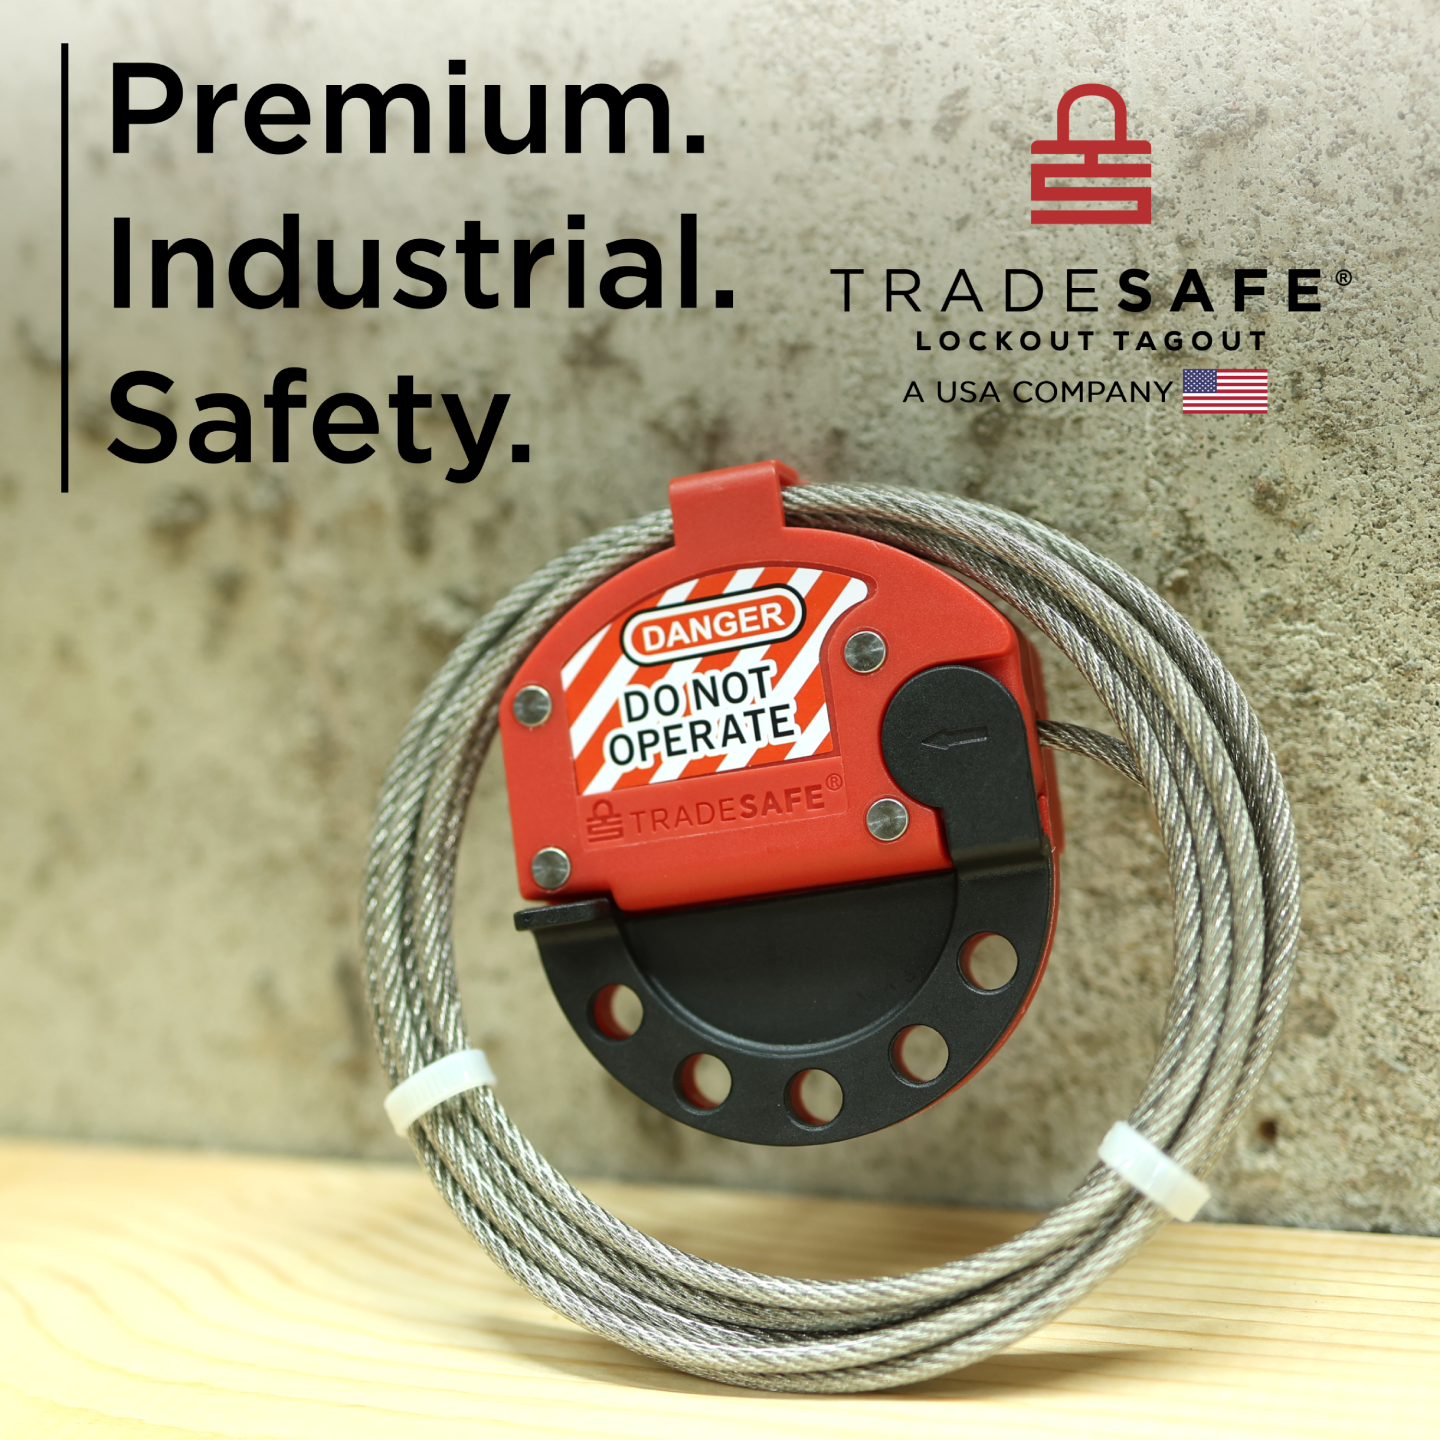 tradesafe: premium. industrial. safety.